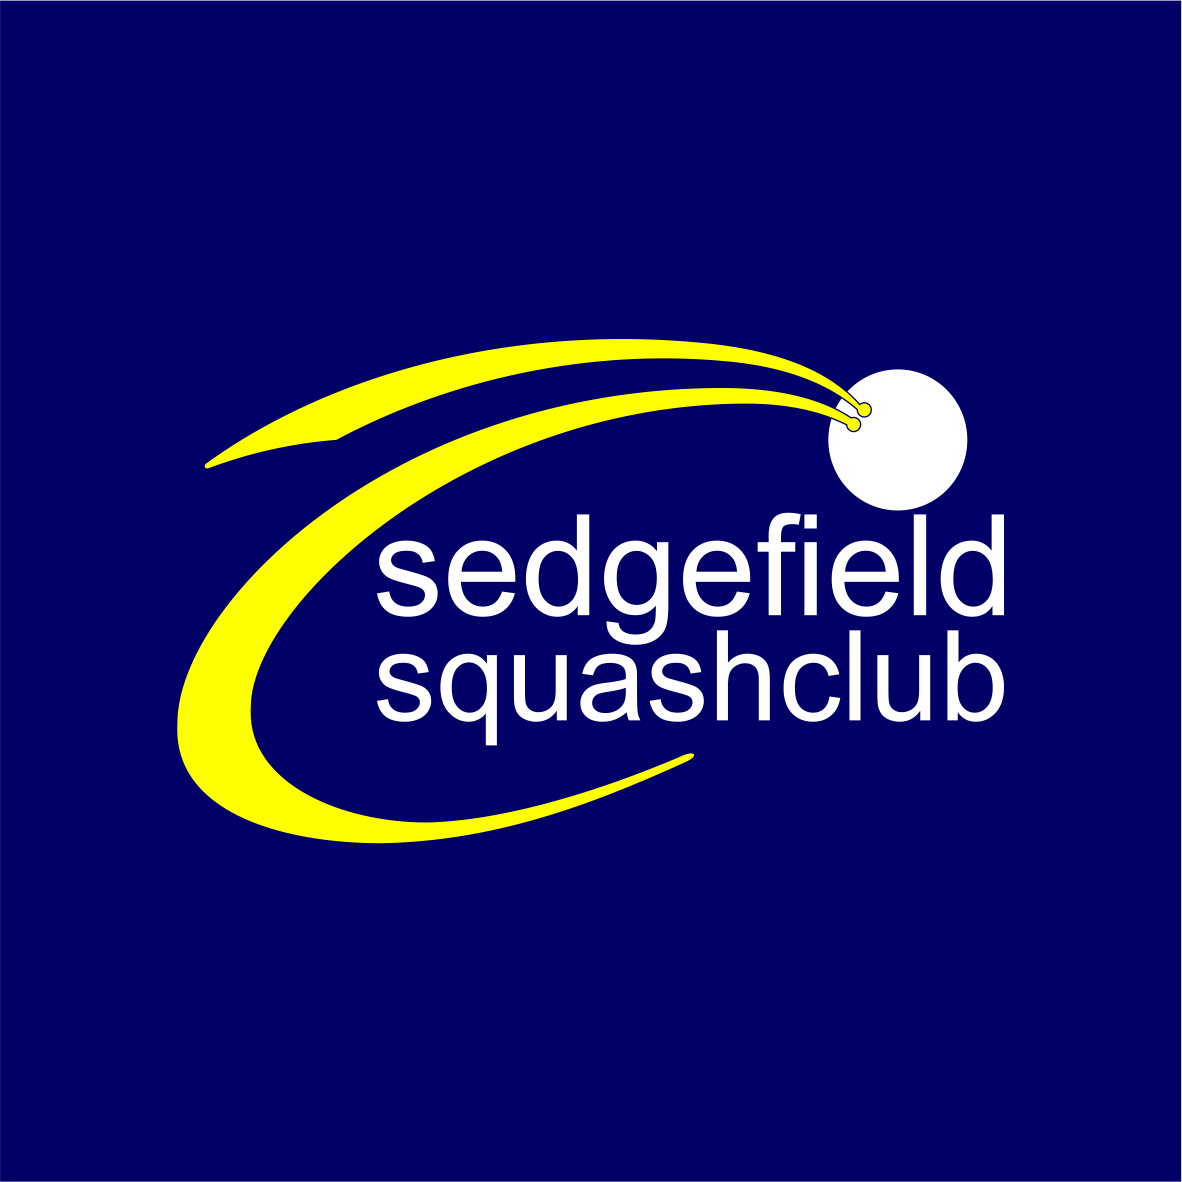 Sedgefield Squash